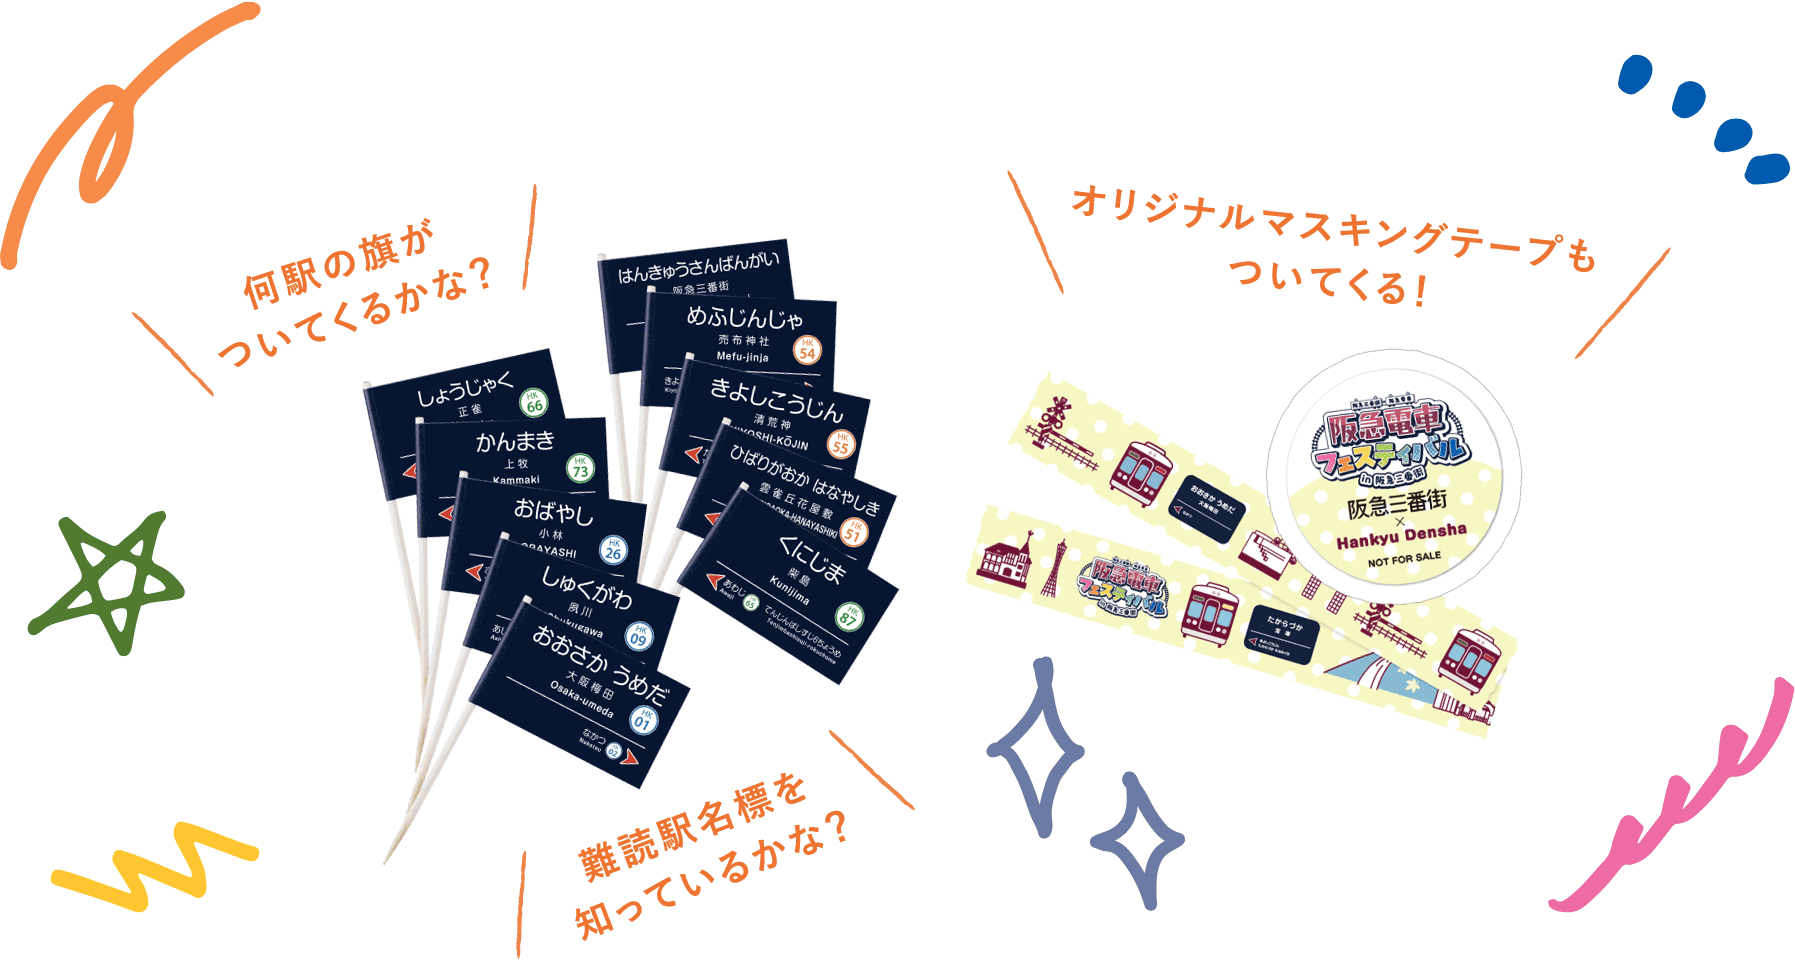 「駅名標ランチ旗」と「阪急電車オリジナルマスキングテープ」